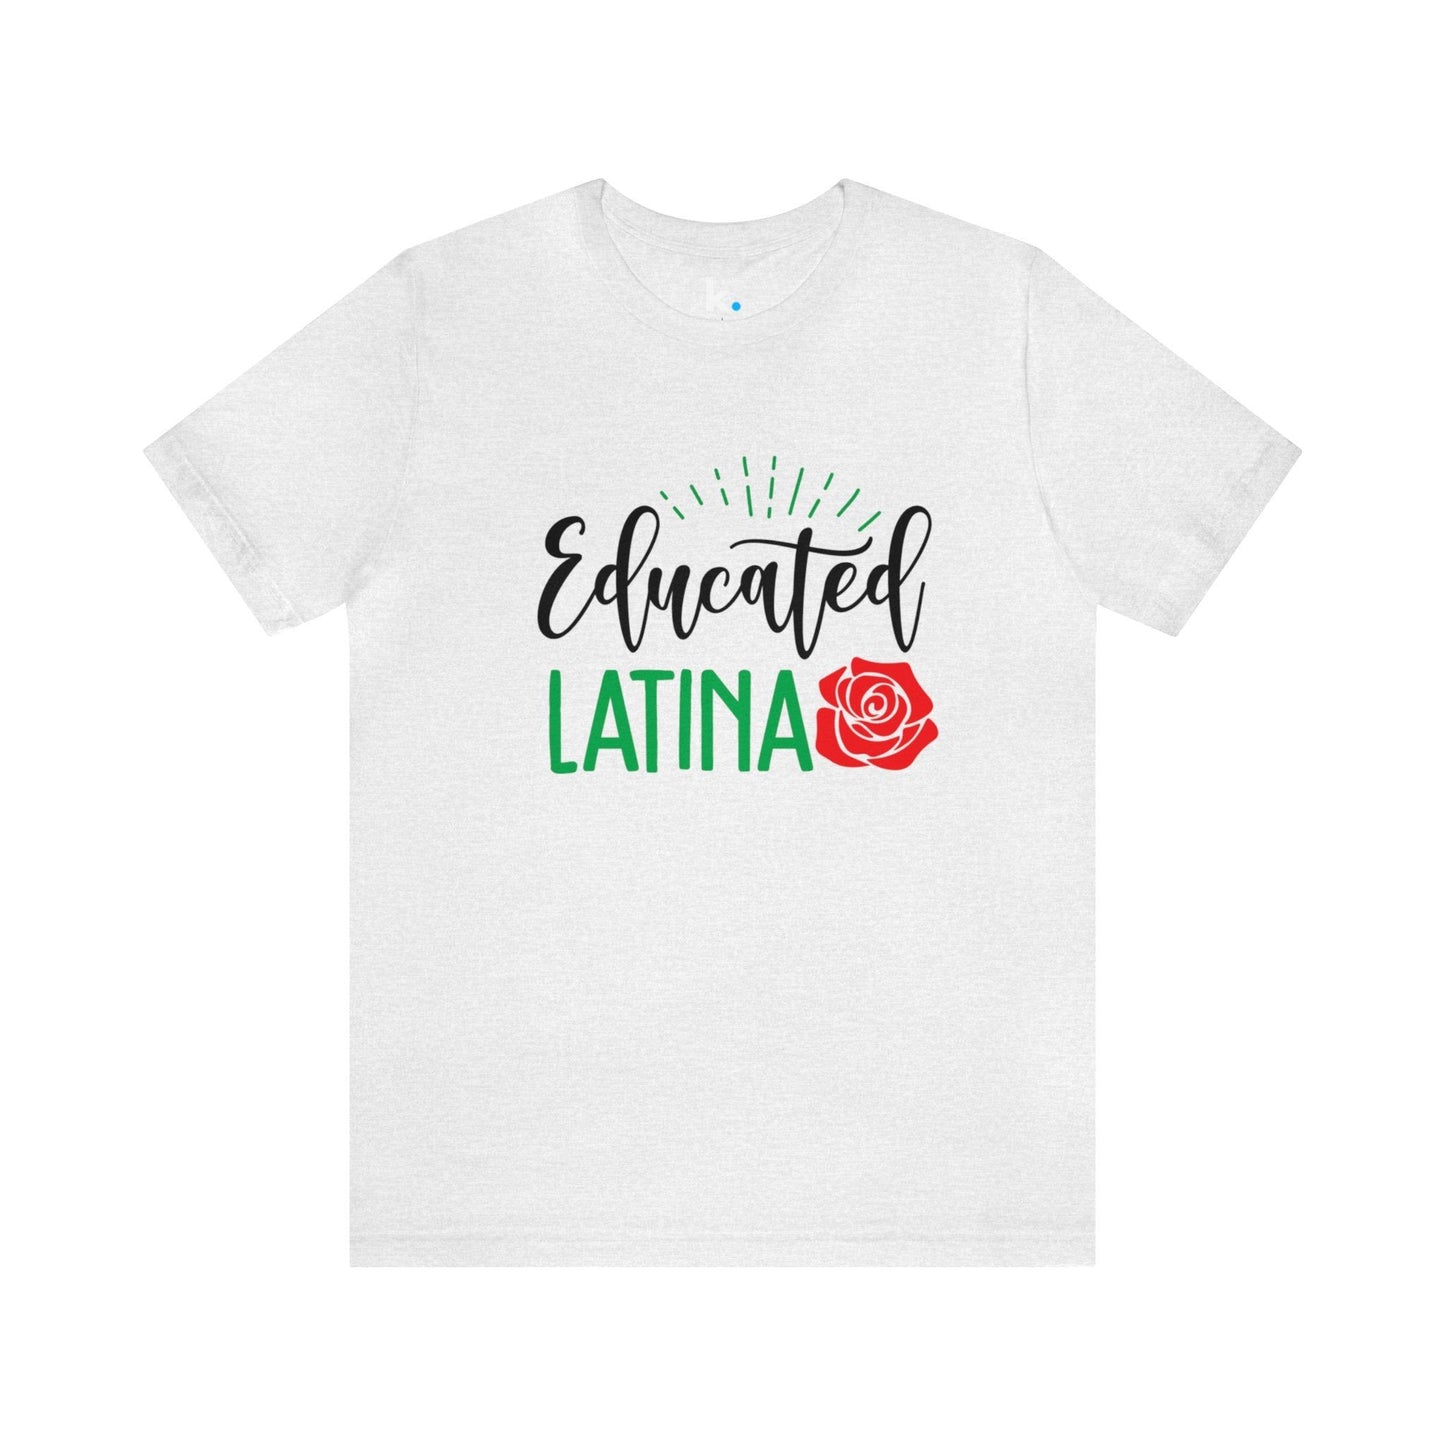 T-shirt - Educated Latina